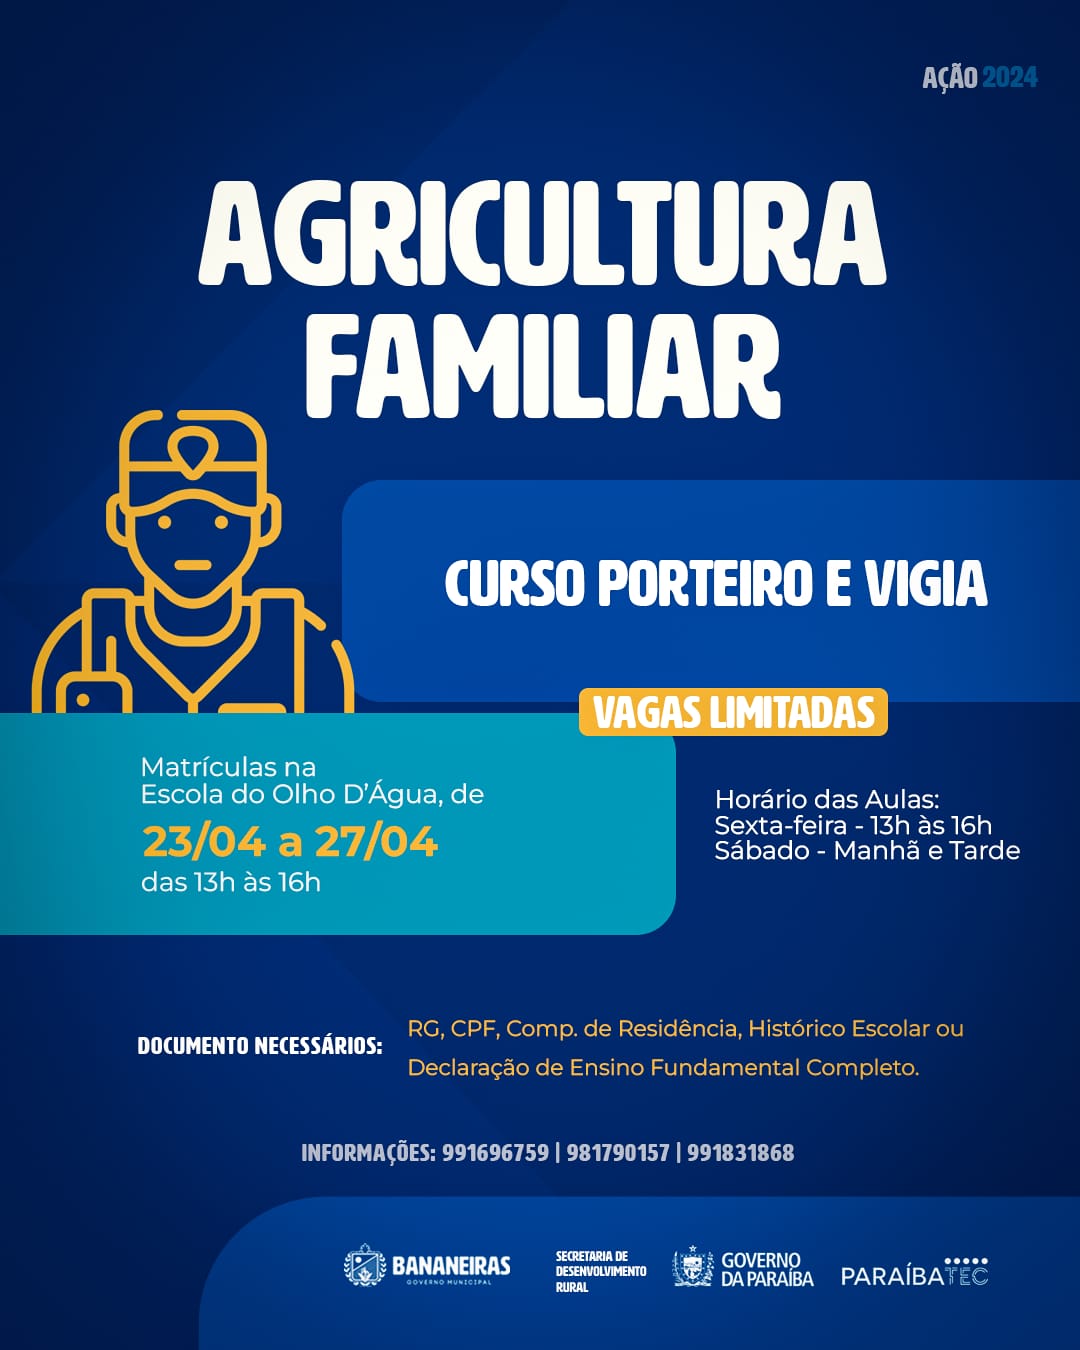 Bananeiras inscreve para curso do Paraíba TEC da Agricultura Familiar Ação 2024